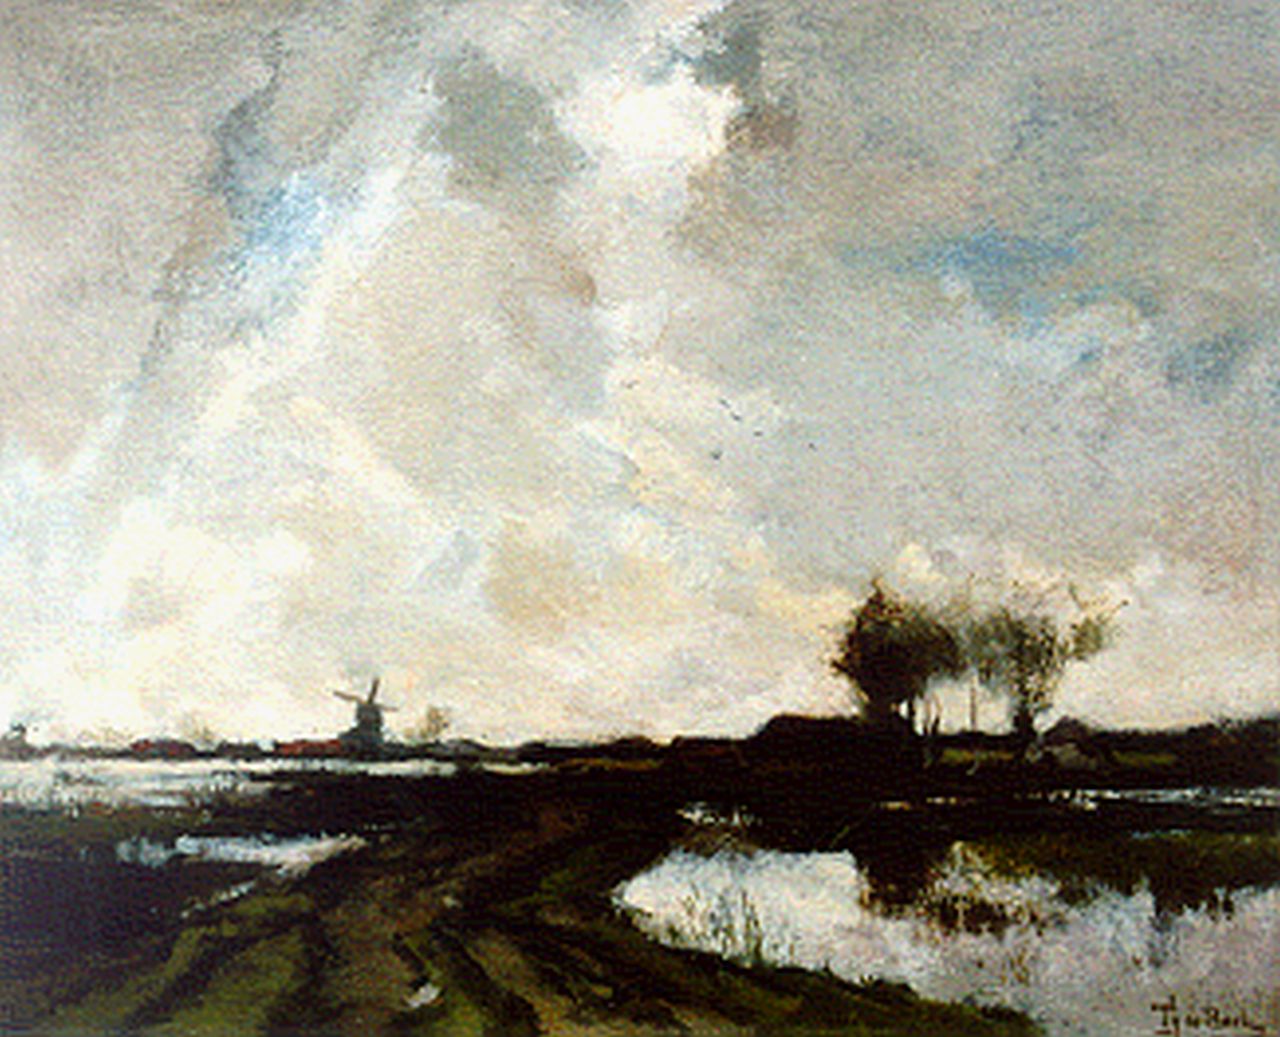 Bock T.E.A. de | Théophile Emile Achille de Bock, A polder landscape, Öl auf Leinwand 37,0 x 45,7 cm, signed l.r.